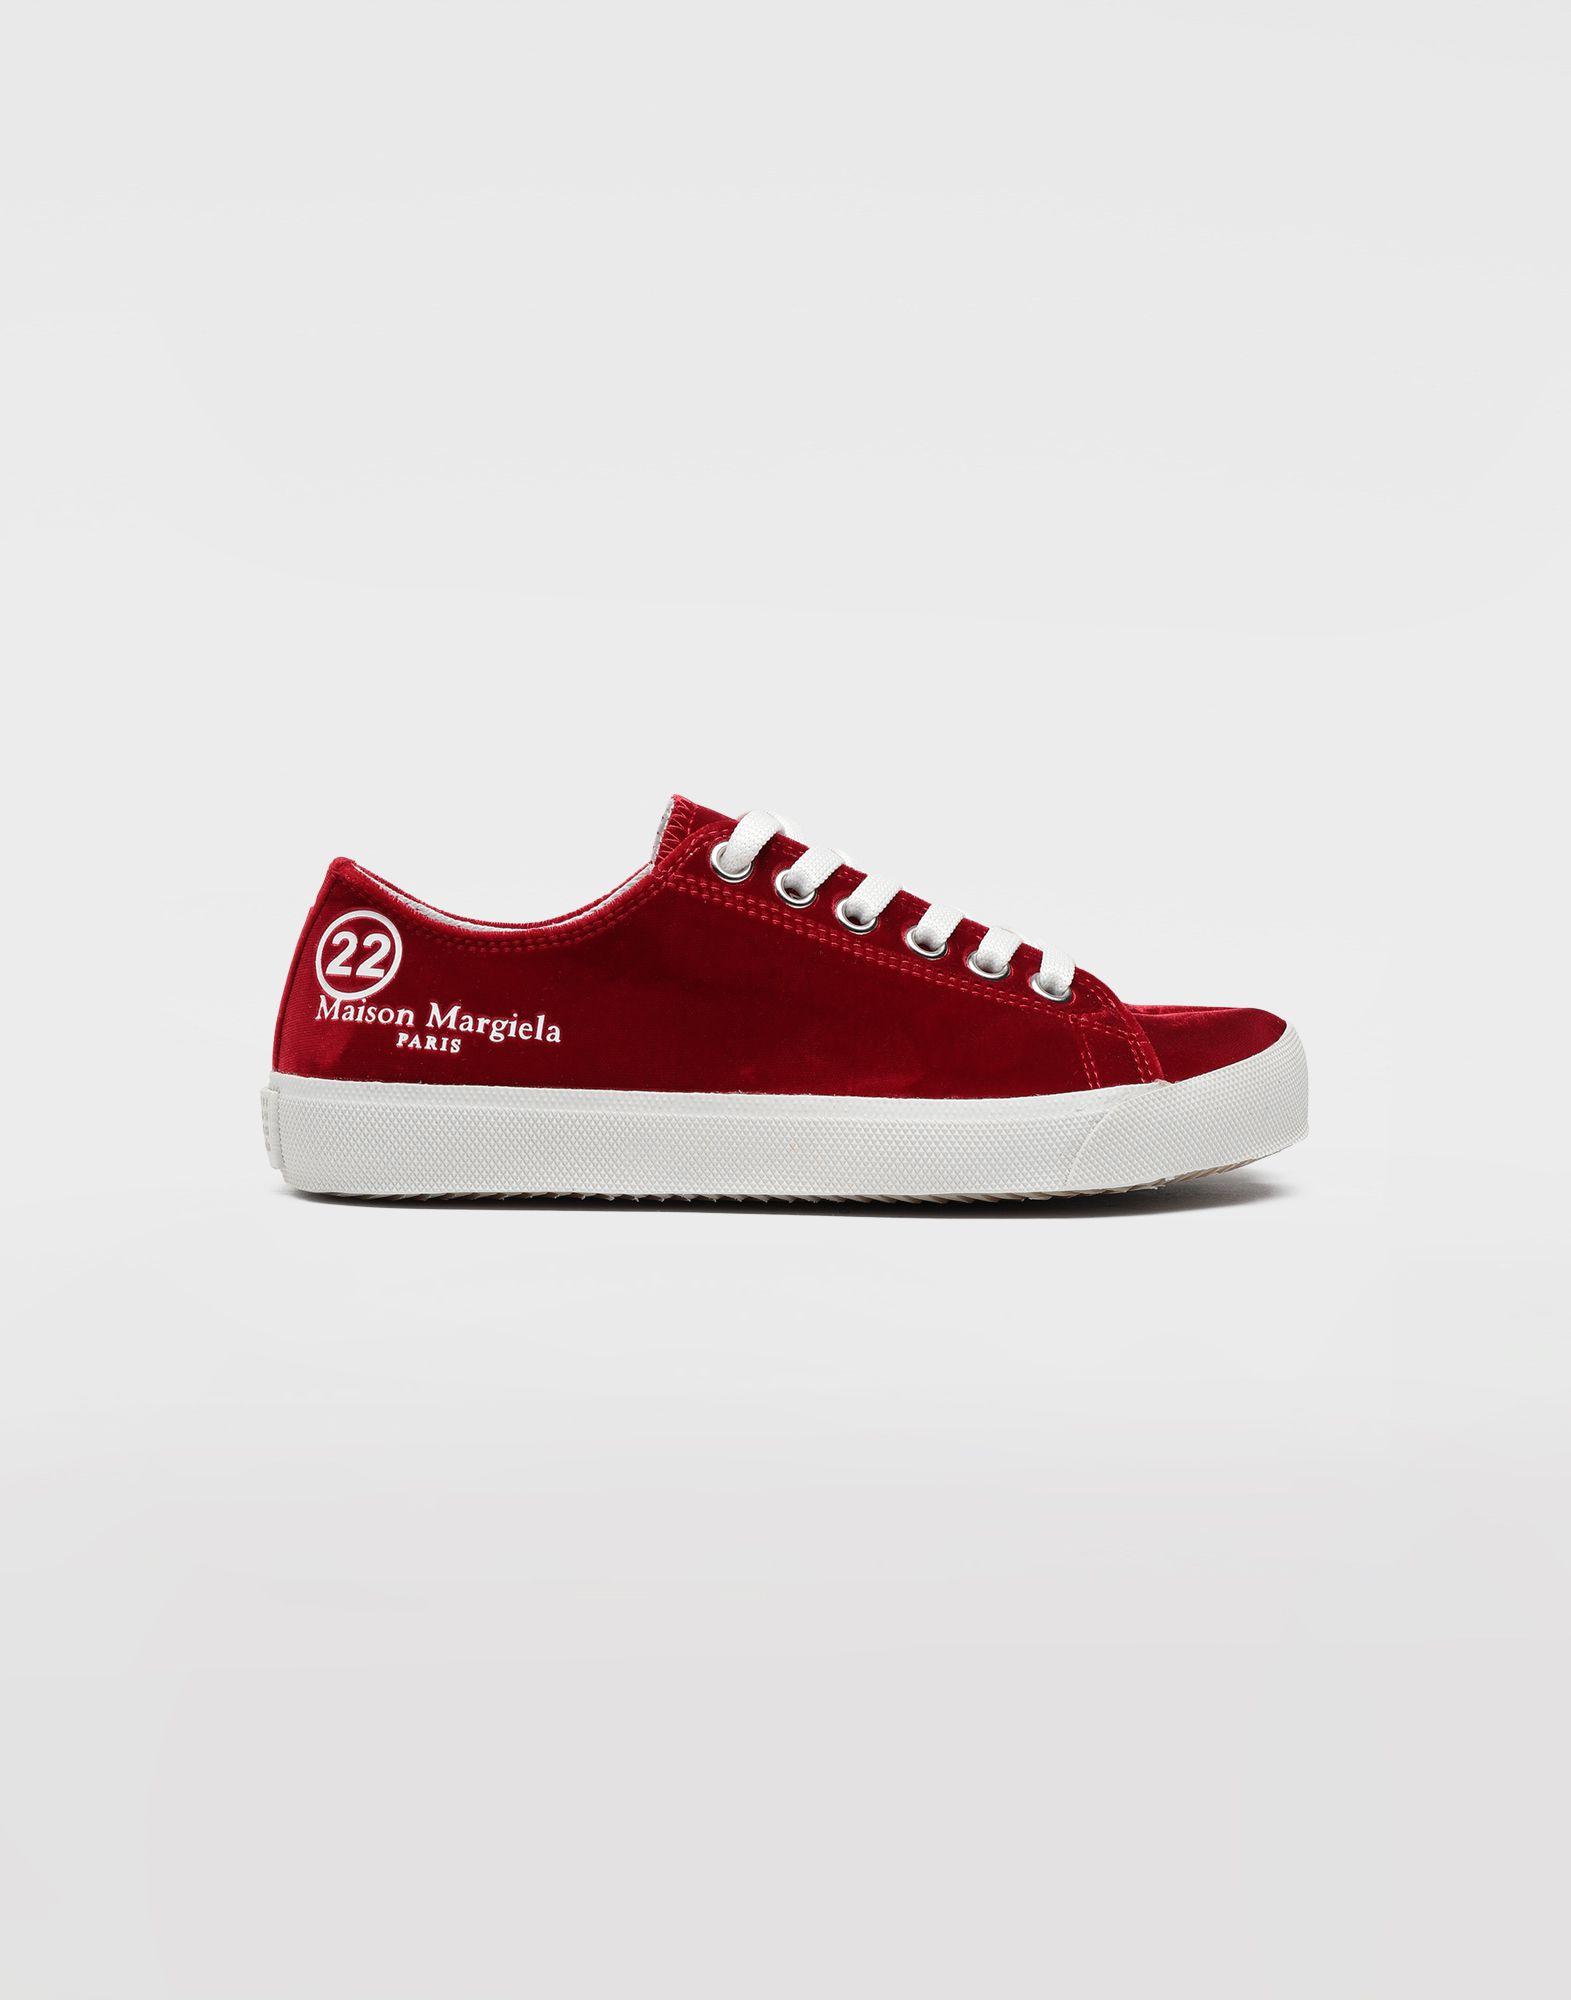 Maison Margiela Tabi Velvet Sneakers in Red - Save 60% - Lyst